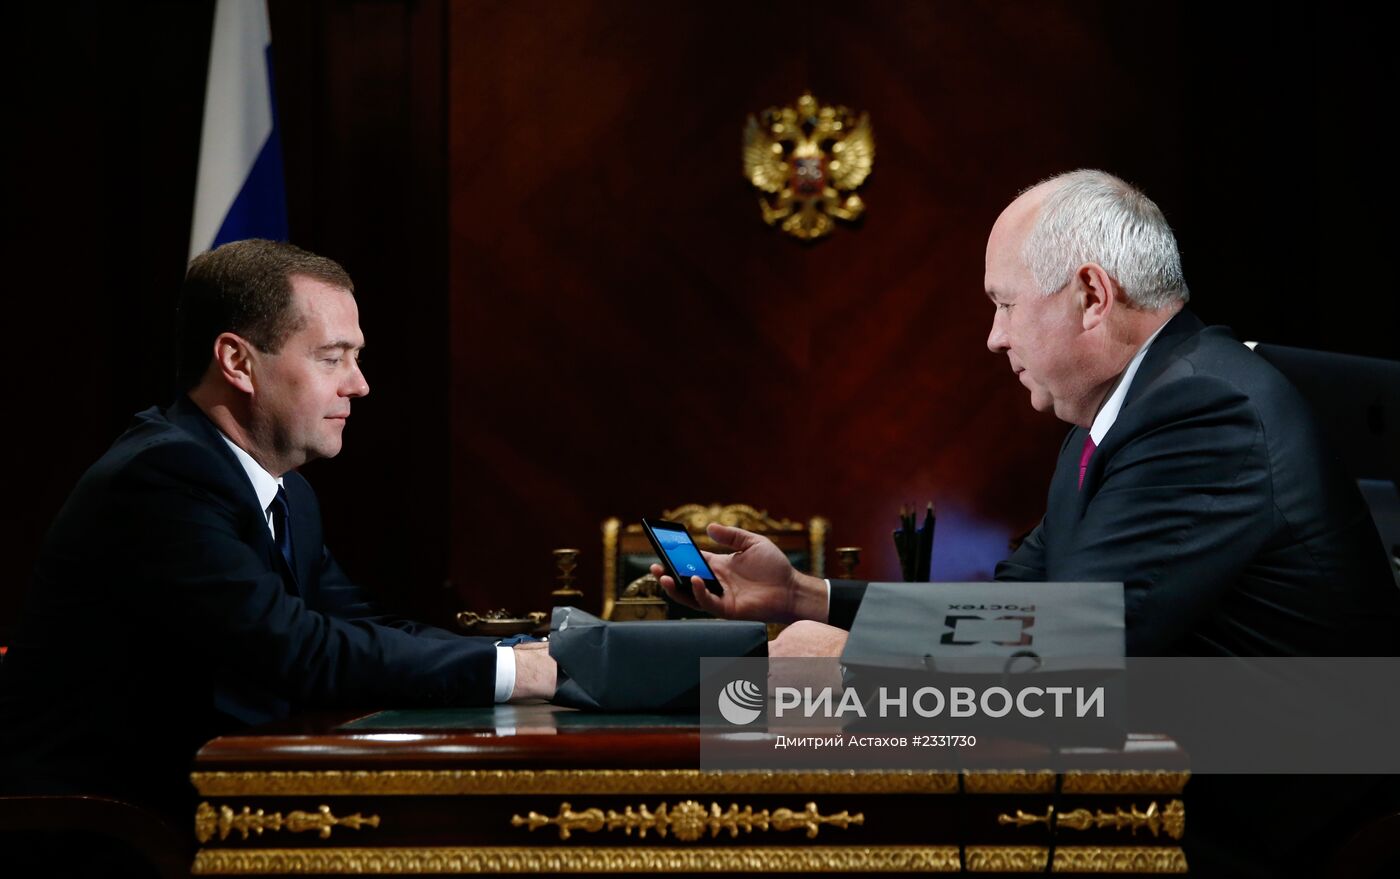 Встреча Д.Медведева с С.Чемезовым